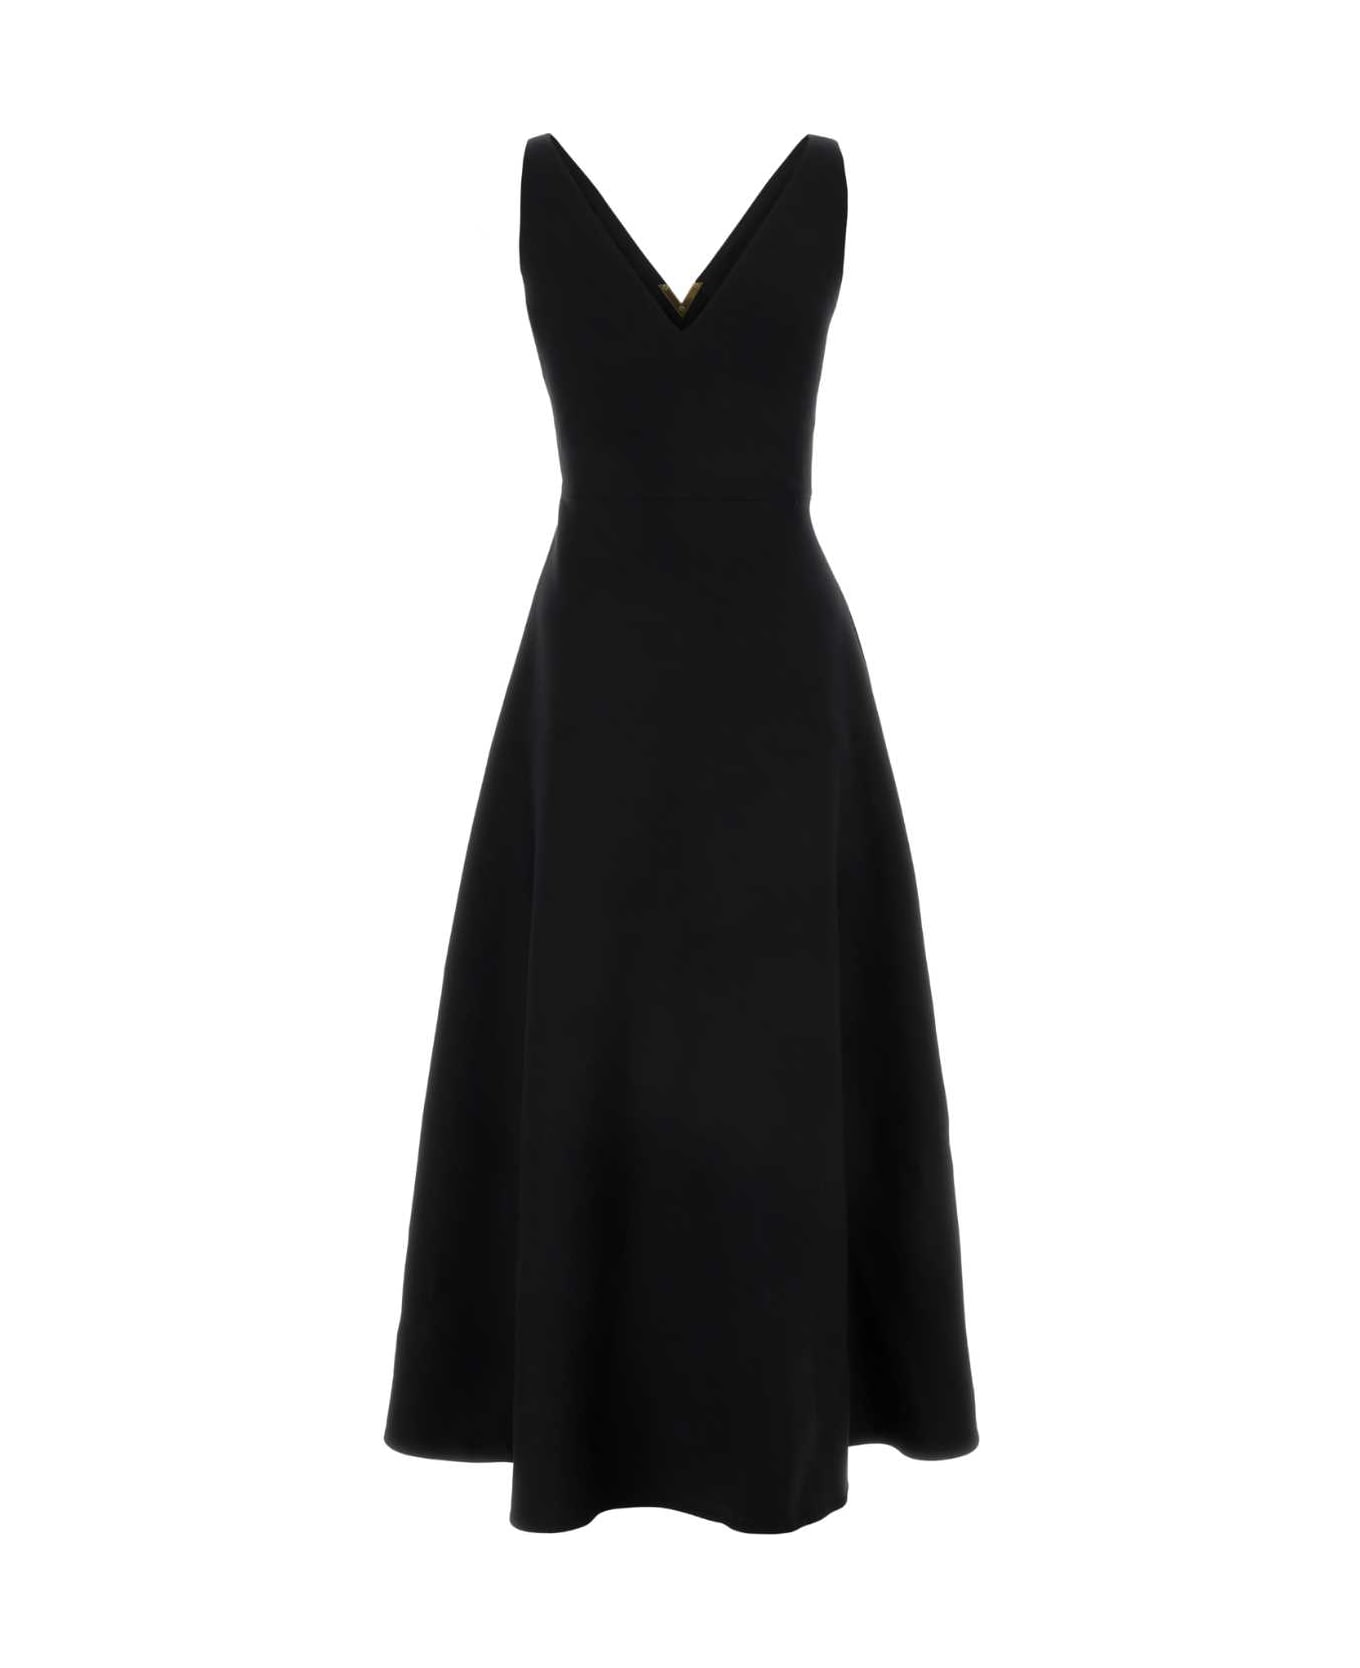 Valentino Garavani Black Crepe Couture Dress - NERO